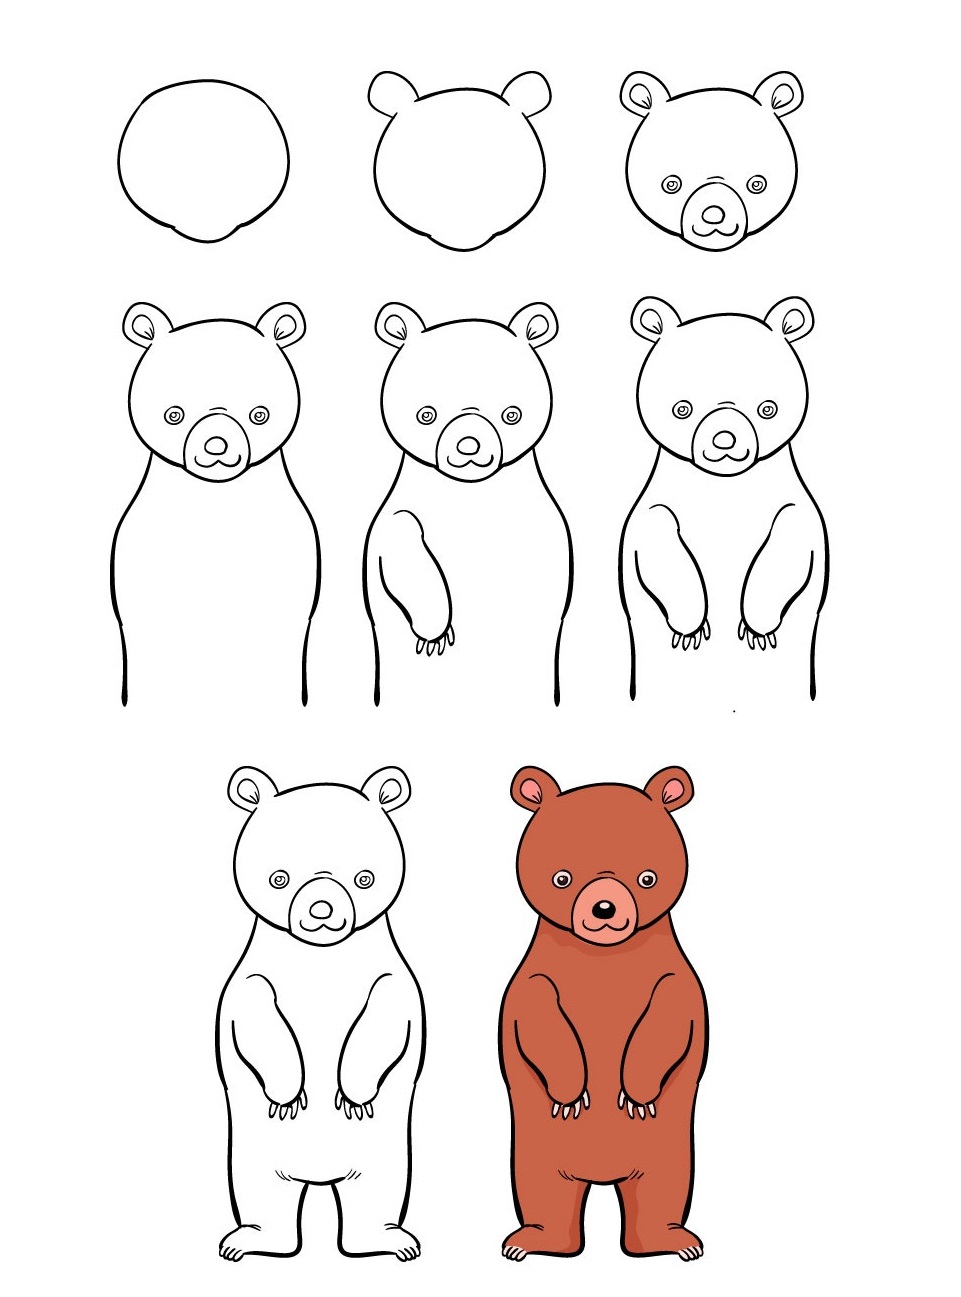 3000+ Hình ảnh Gấu Trúc đẹp Cute đáng yêu dễ thương-hình ảnh gấu trúc ngầu-Hình  ảnh gấu trúc đỏ-ảnh gấu panda trắng-meme gấu trúc troll face-ảnh gấu trúc  anime-hình gấu trúc meme-tải